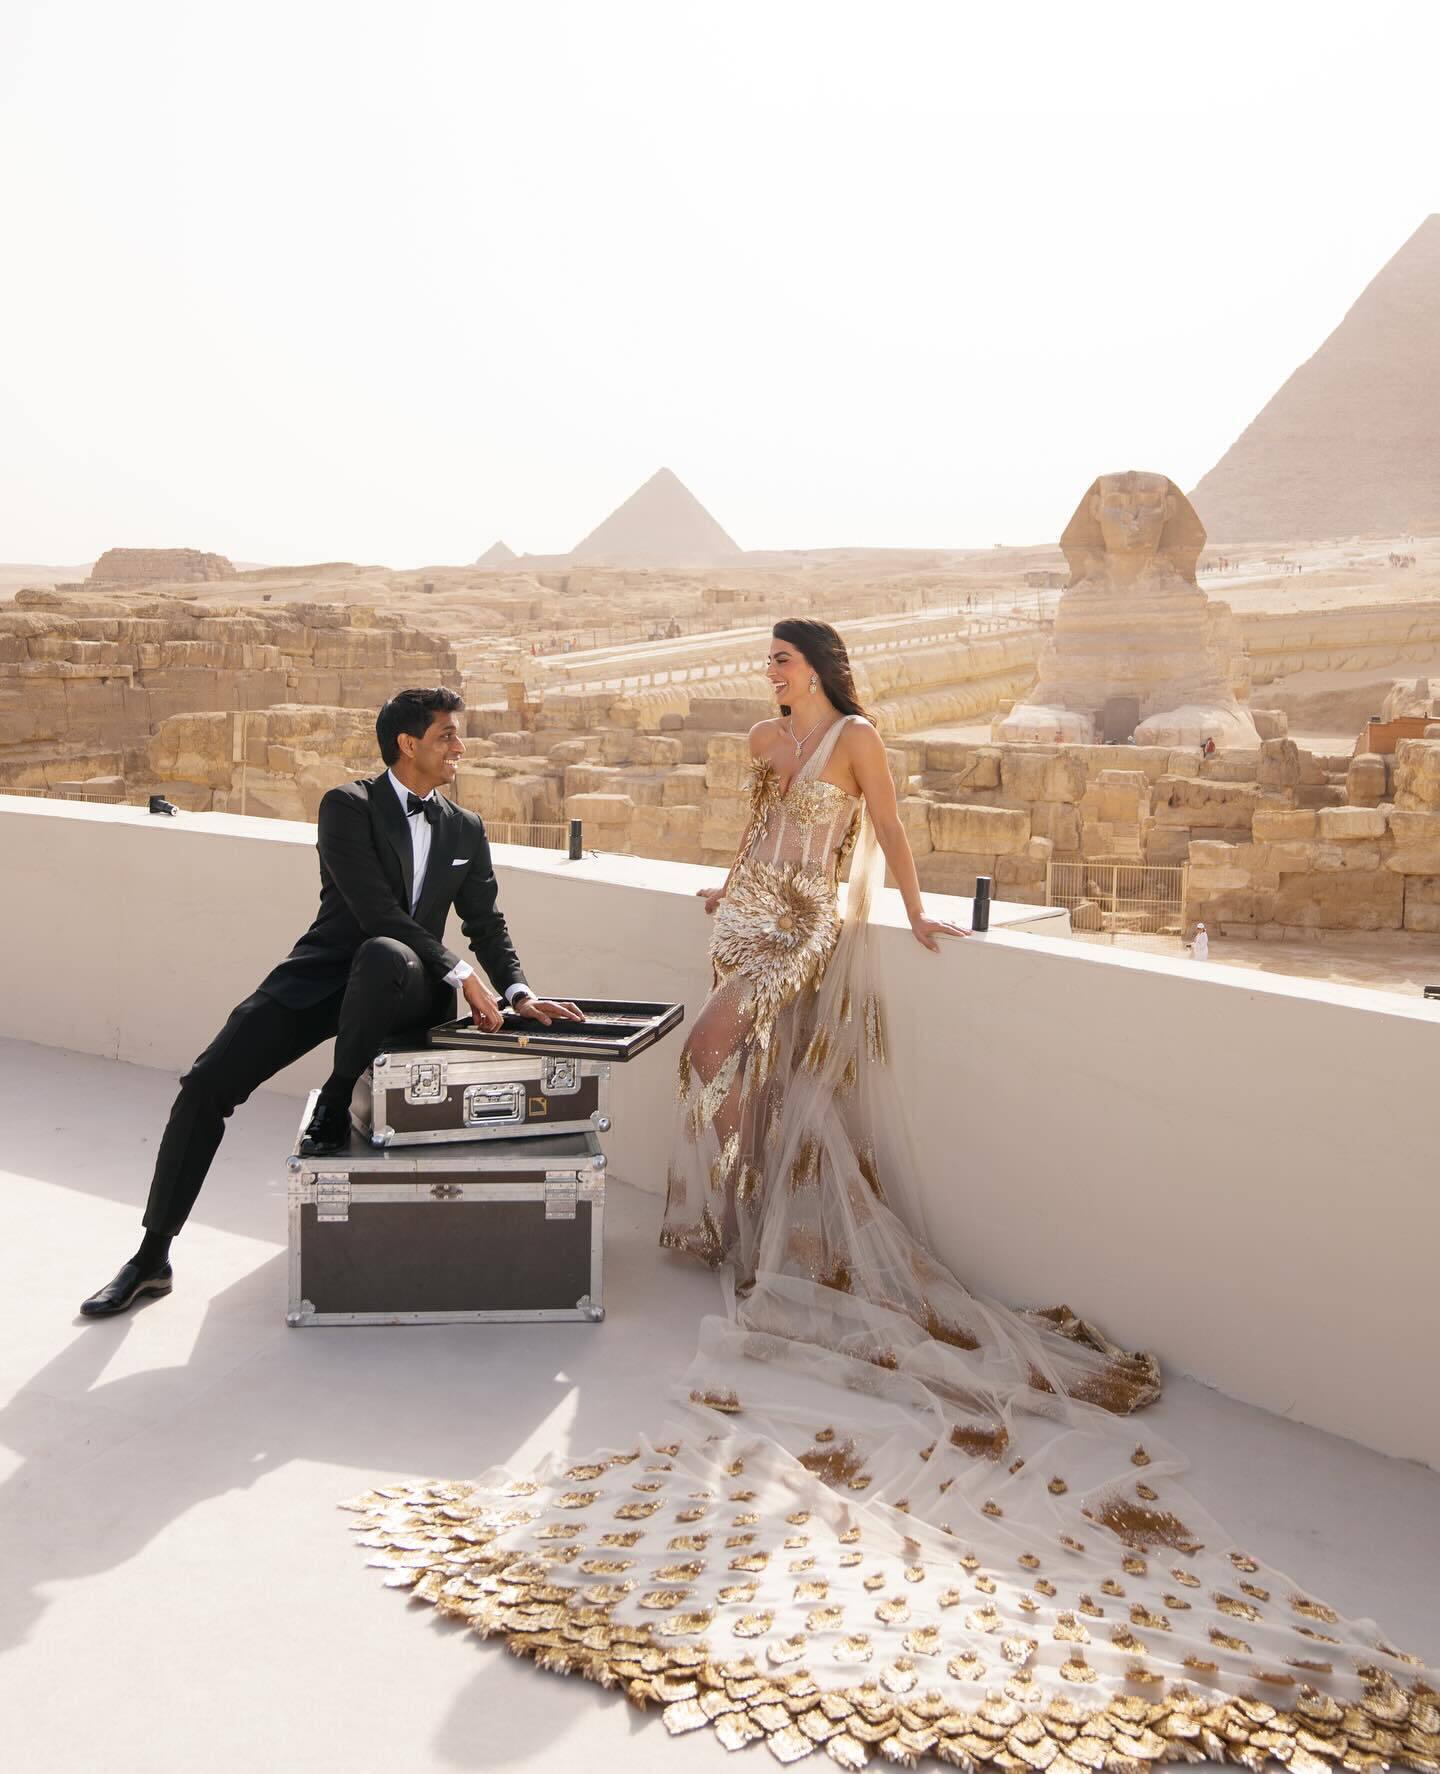 А могло быть в космосе. Американский миллиардер отпраздновал пышную свадьбу в Египте у подножия пирамид